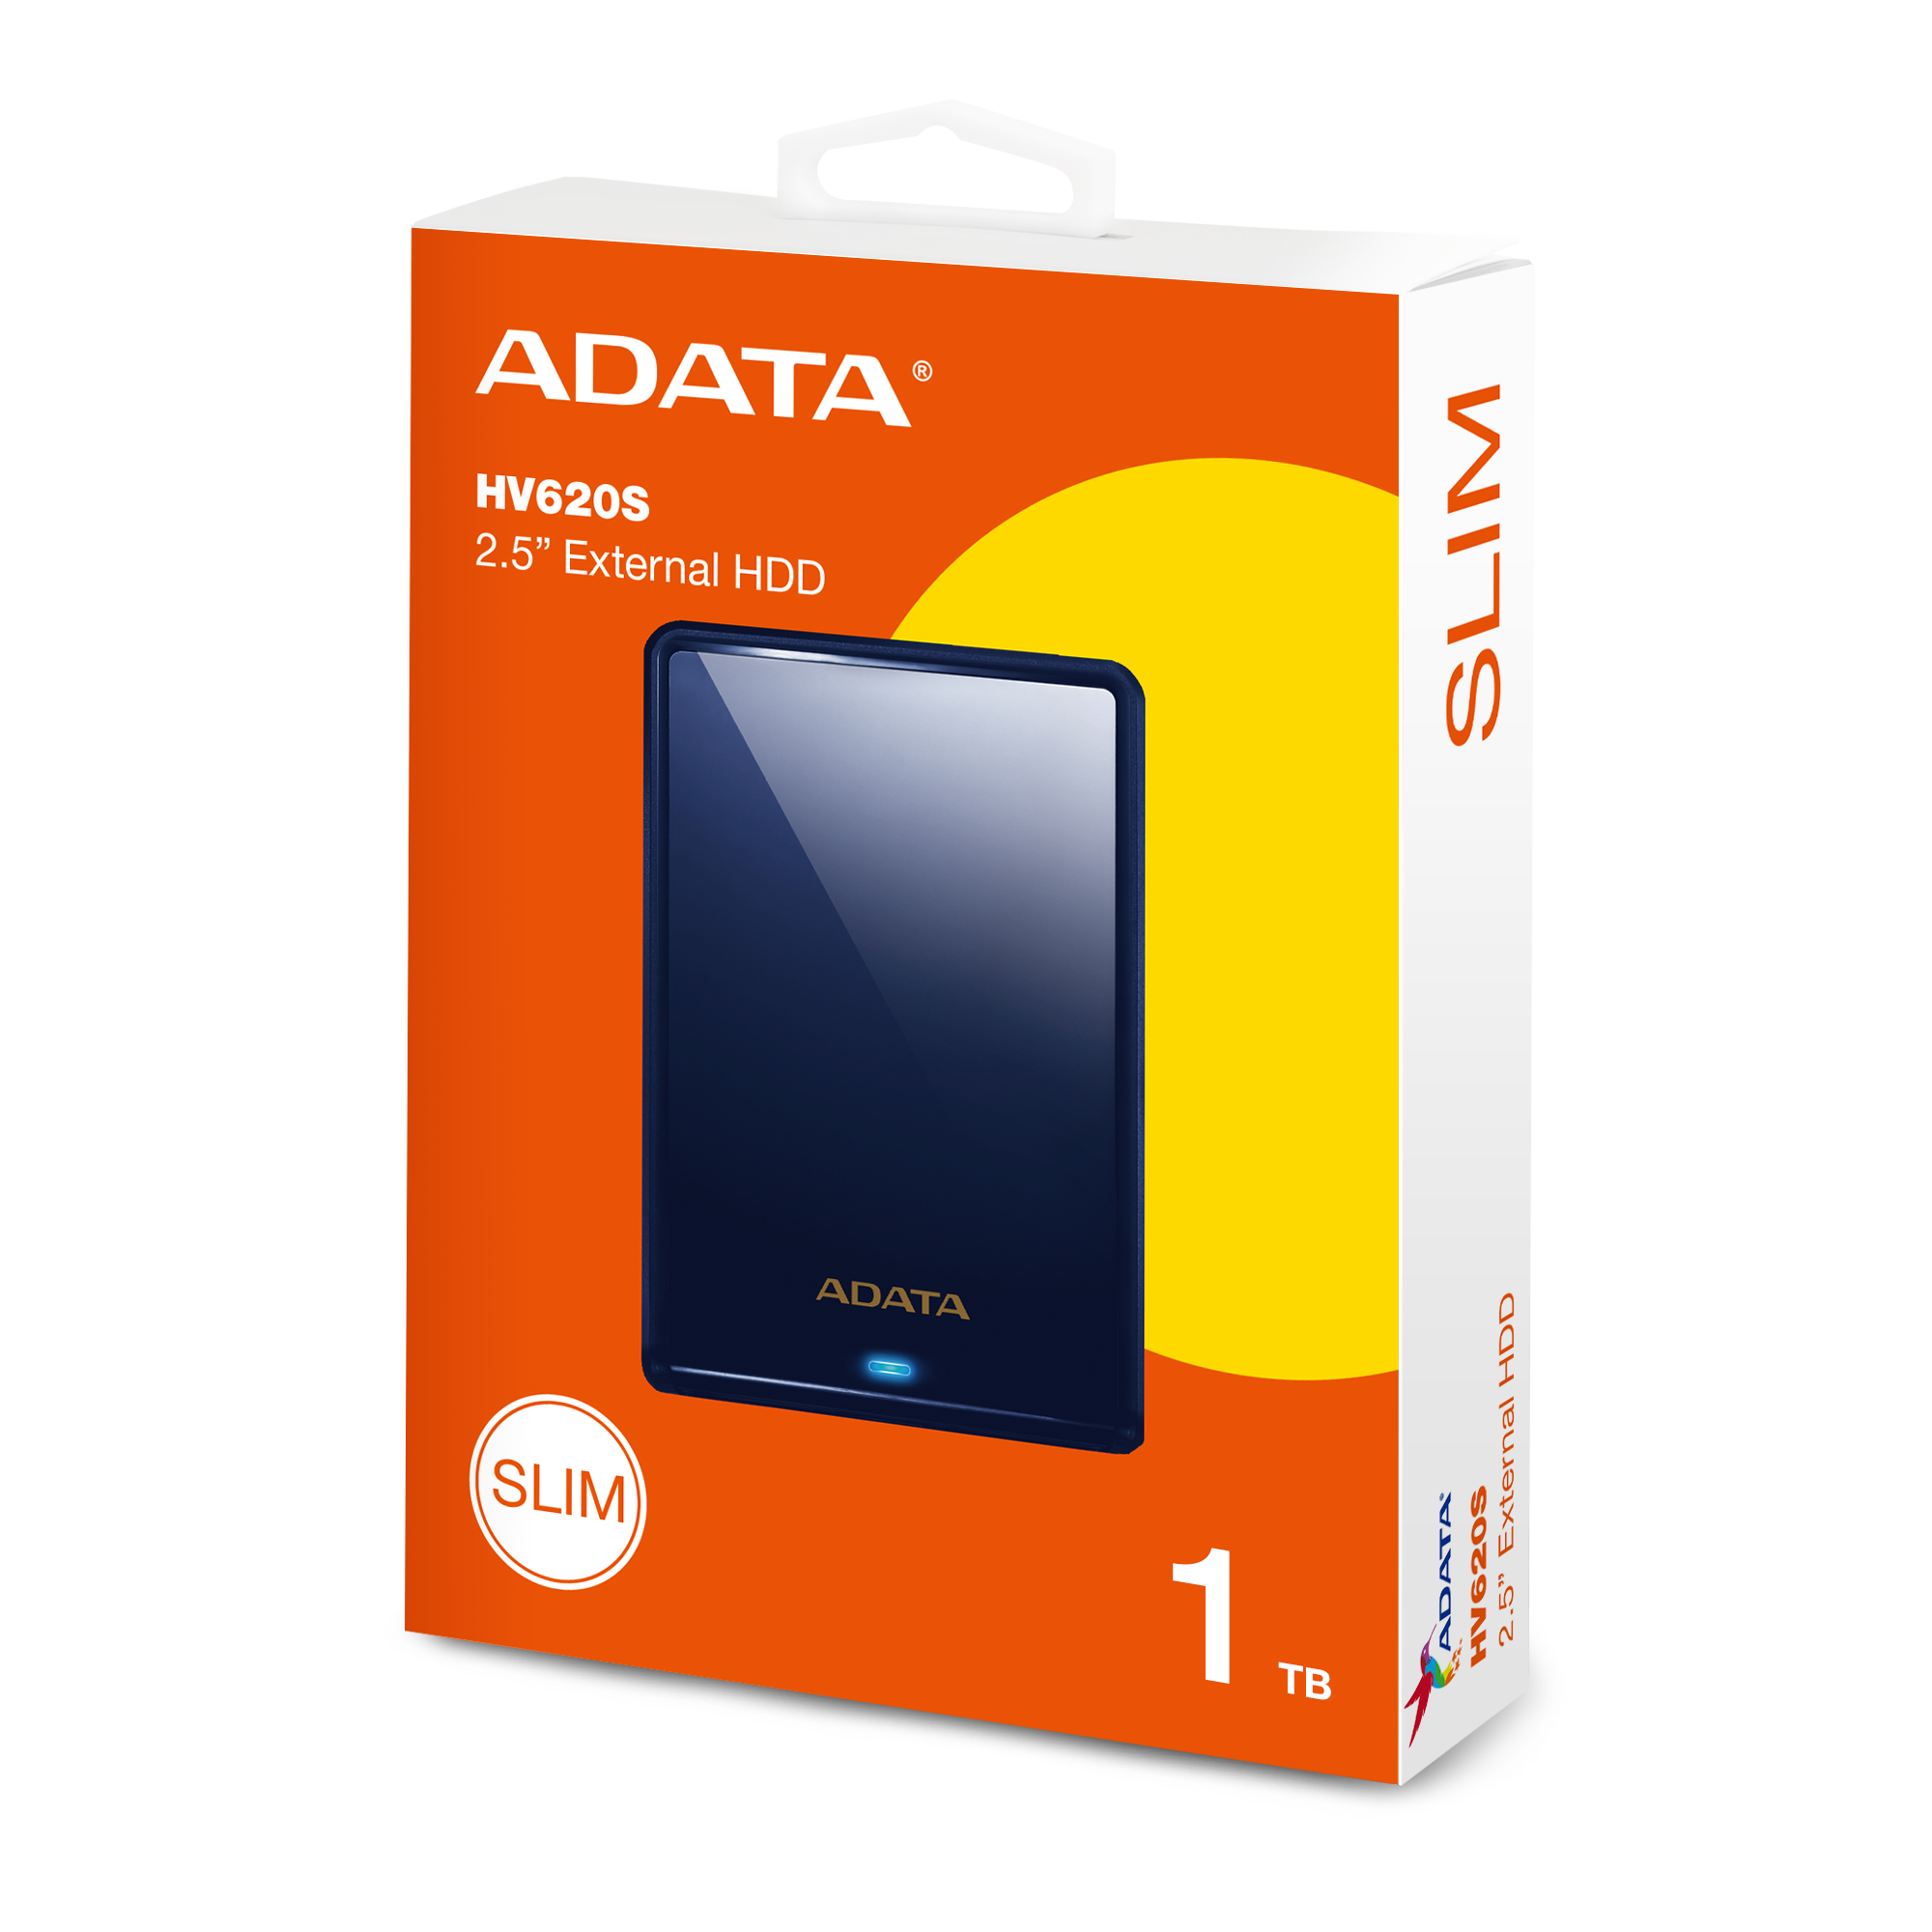 ADATA HDD HD620S, 1 TB, USB 3.2 (AHV620S-1TU31-CBL) externý pevný disk, modrá